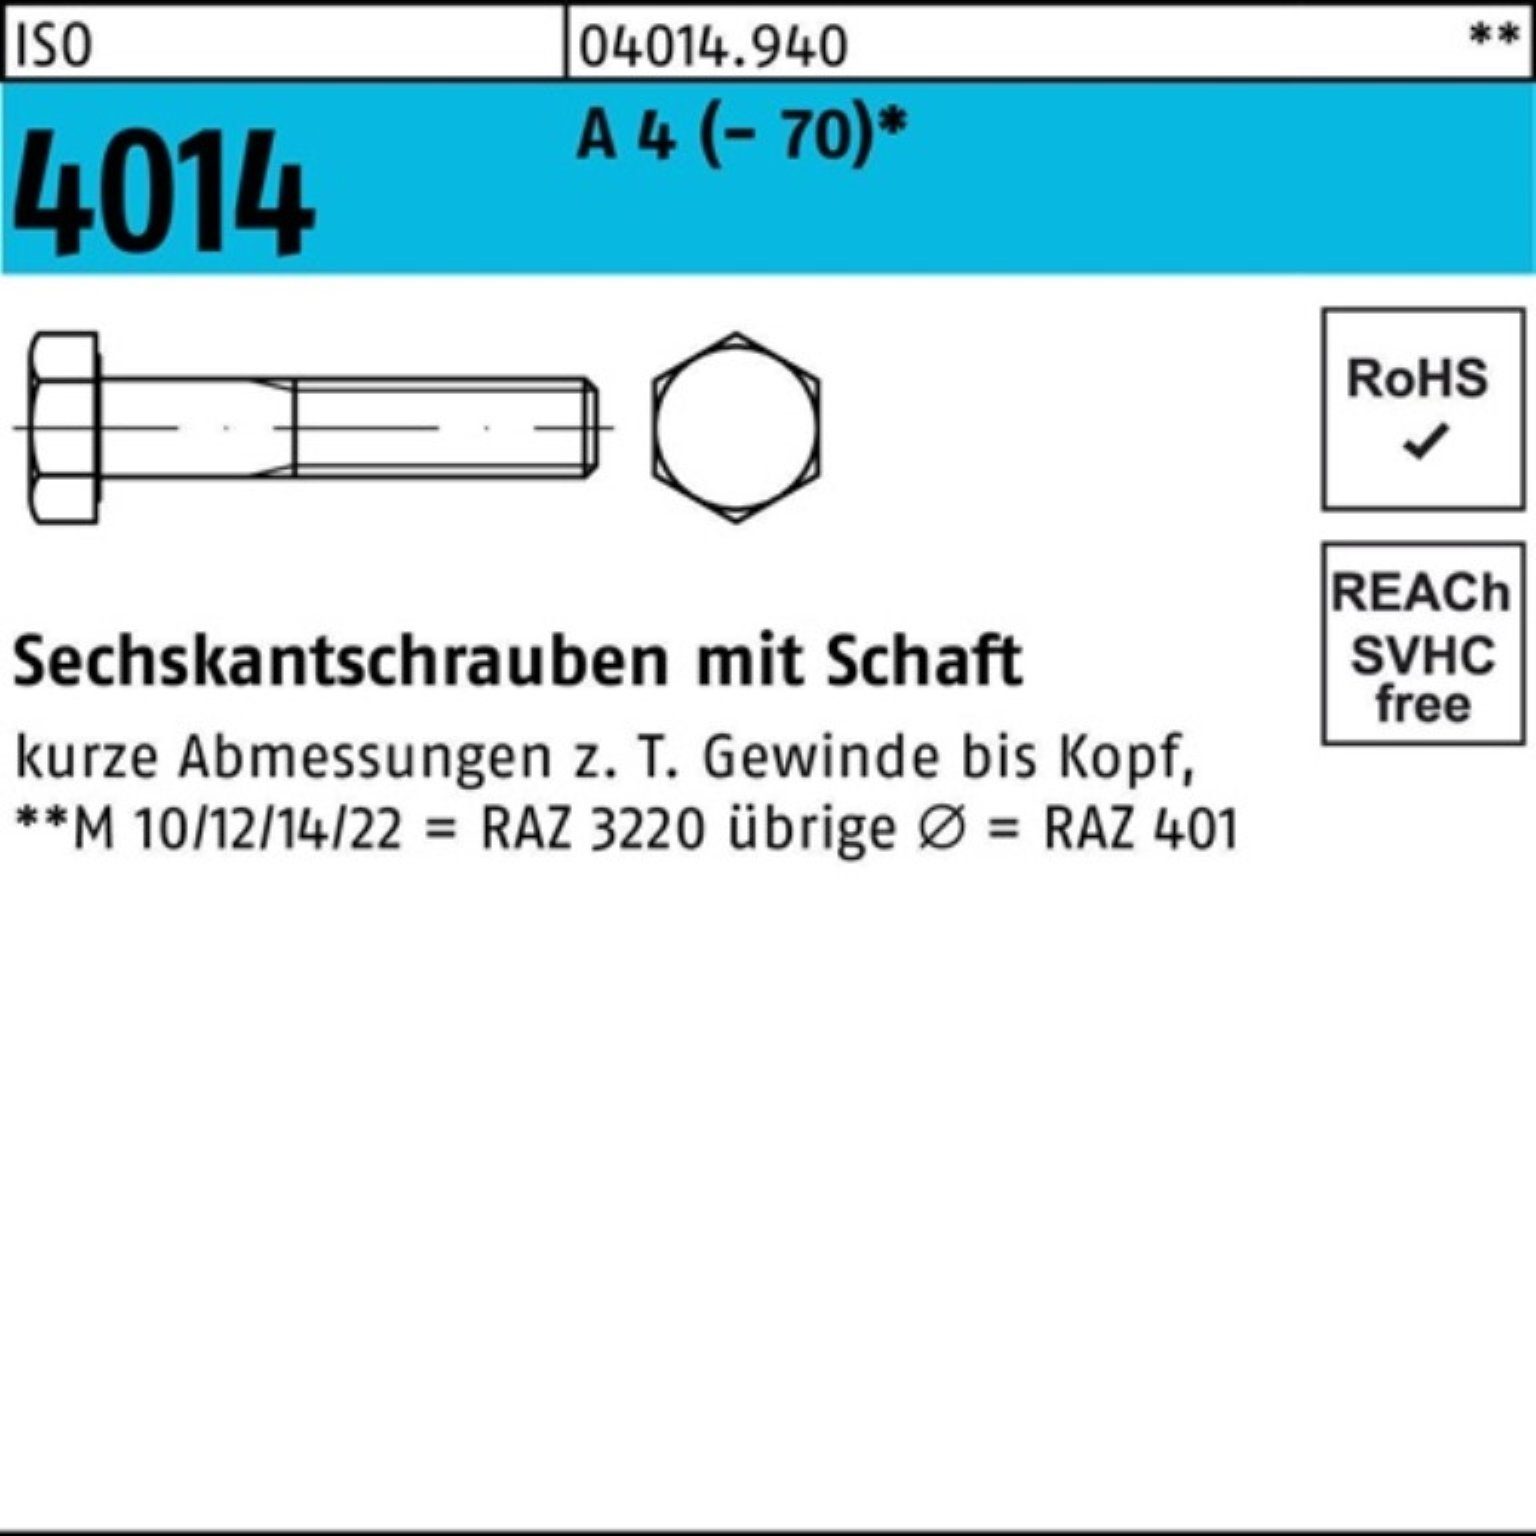 ISO Pack Bufab M10x 100er 4 A 140 Sechskantschraube Sechskantschraube 4014 St (70) 1 Schaft